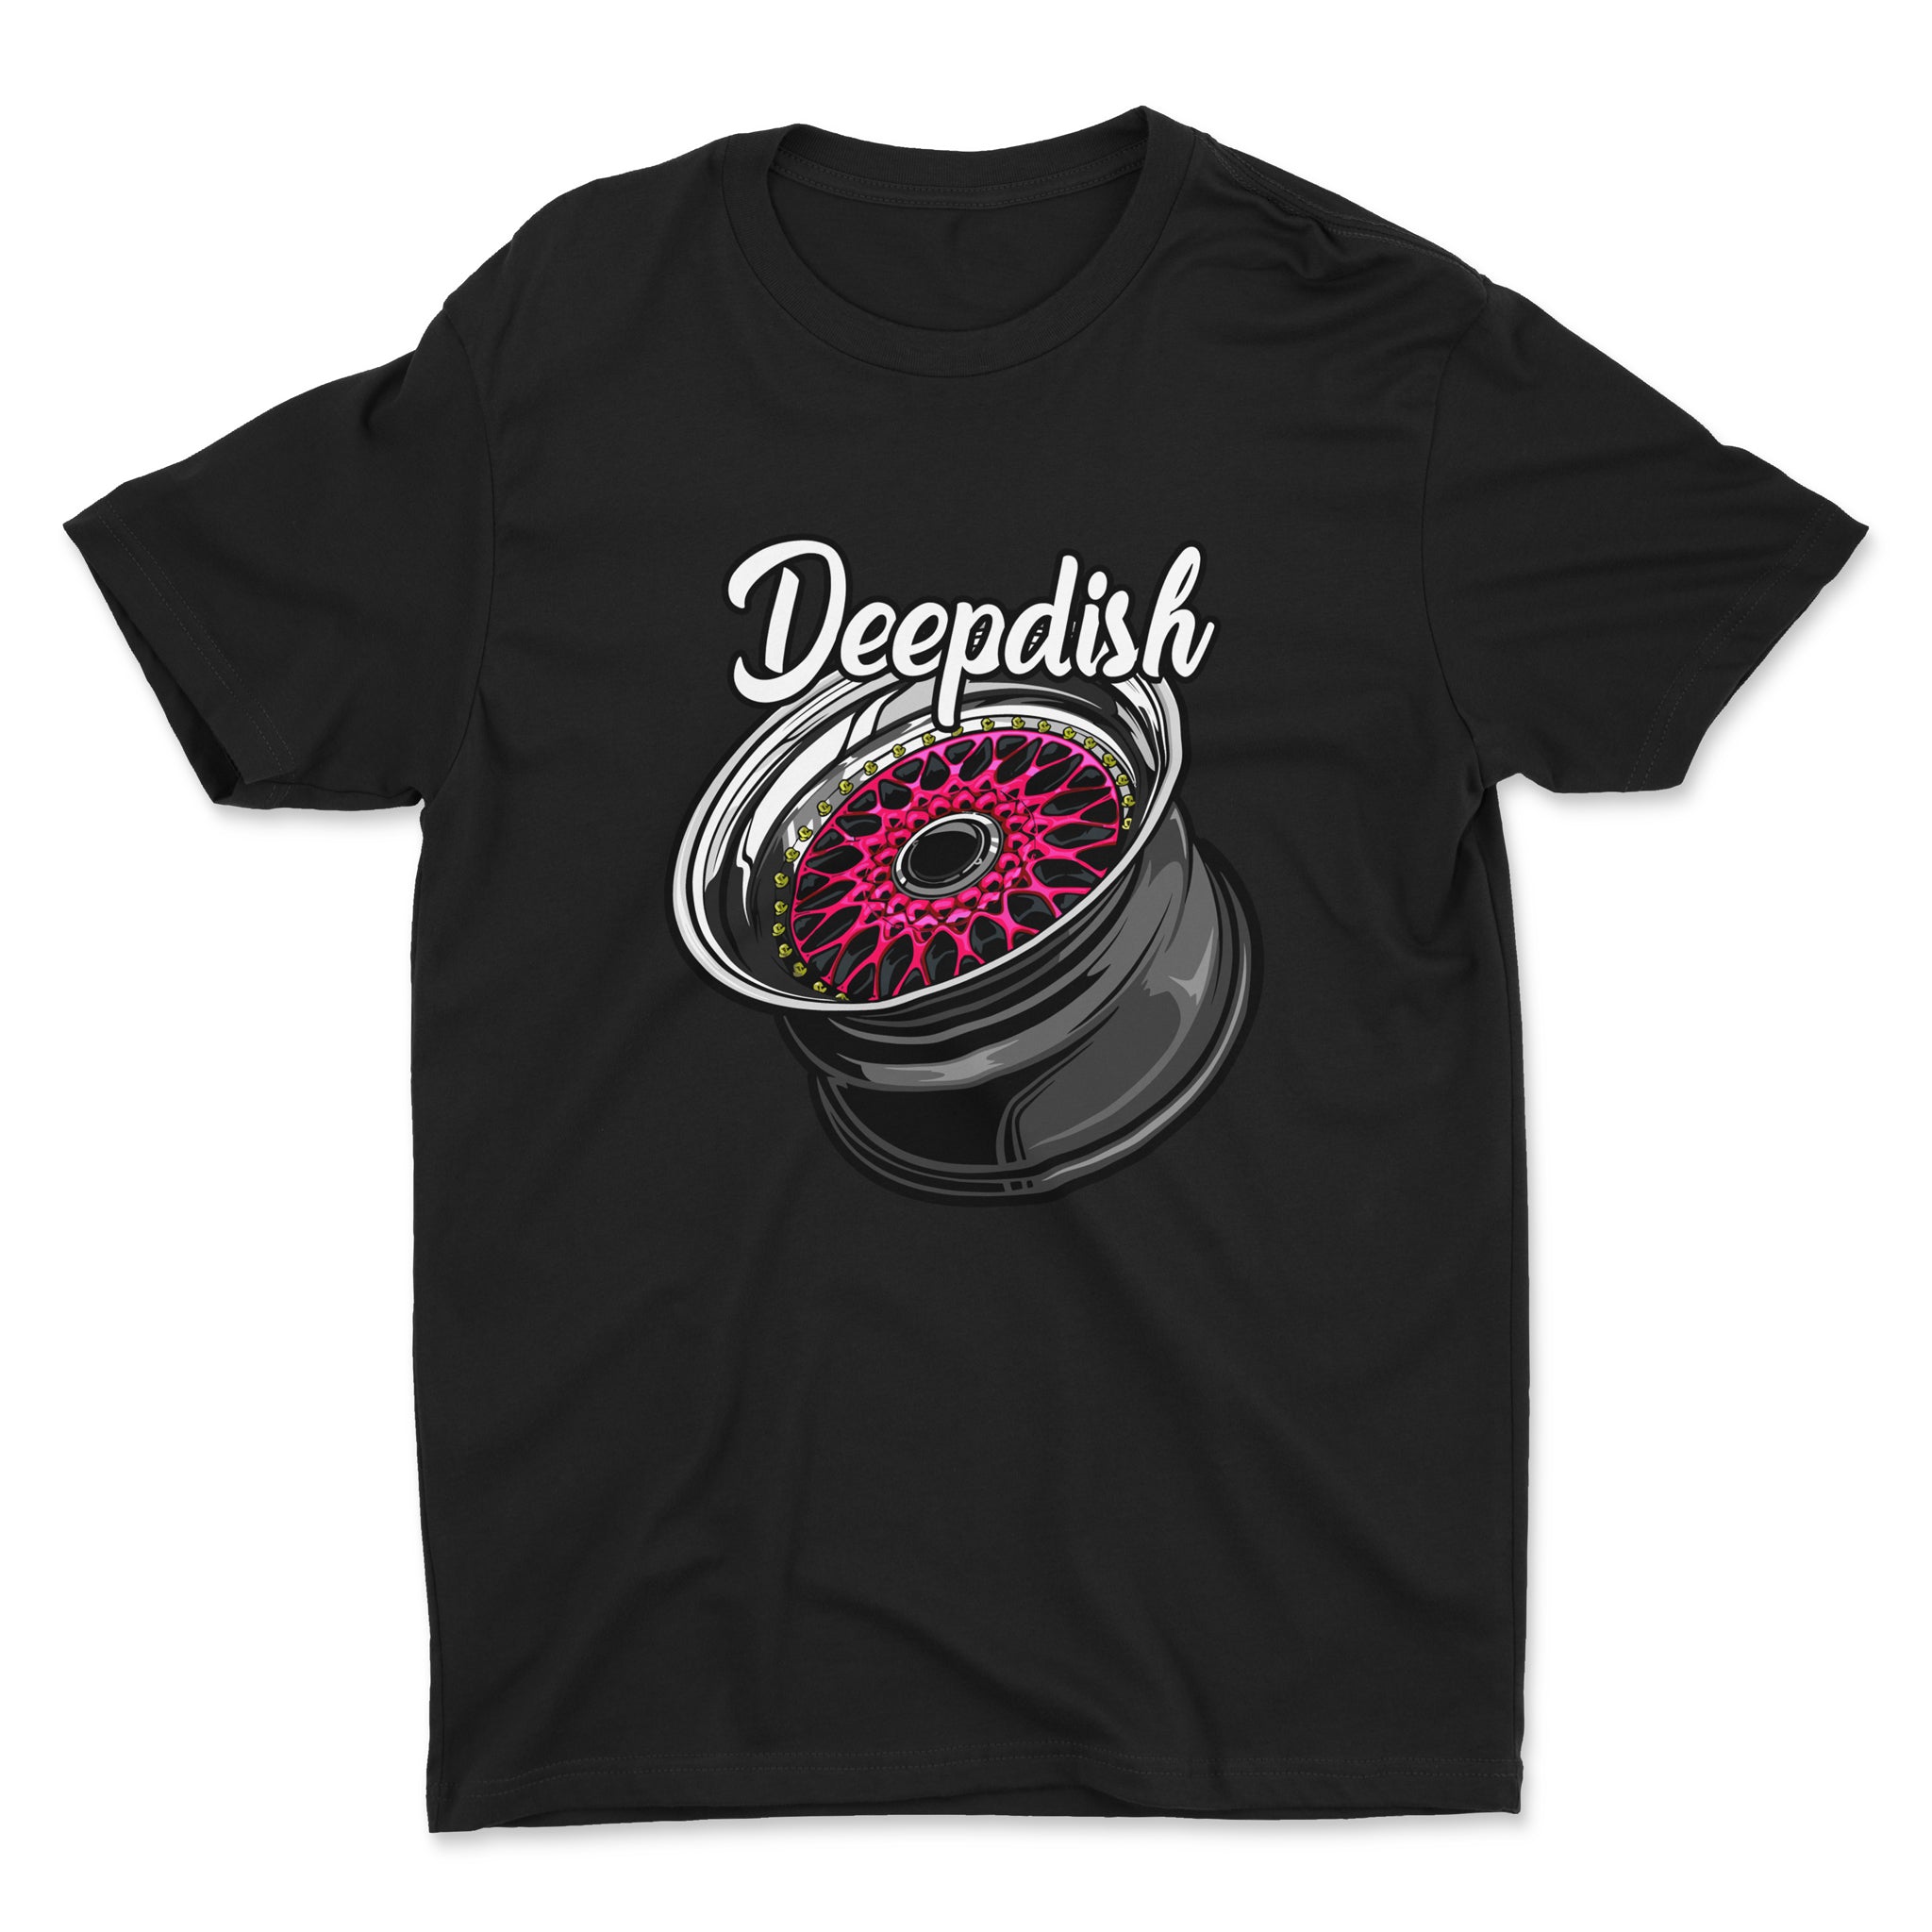 Deep Dish - Car T-Shirt - Black